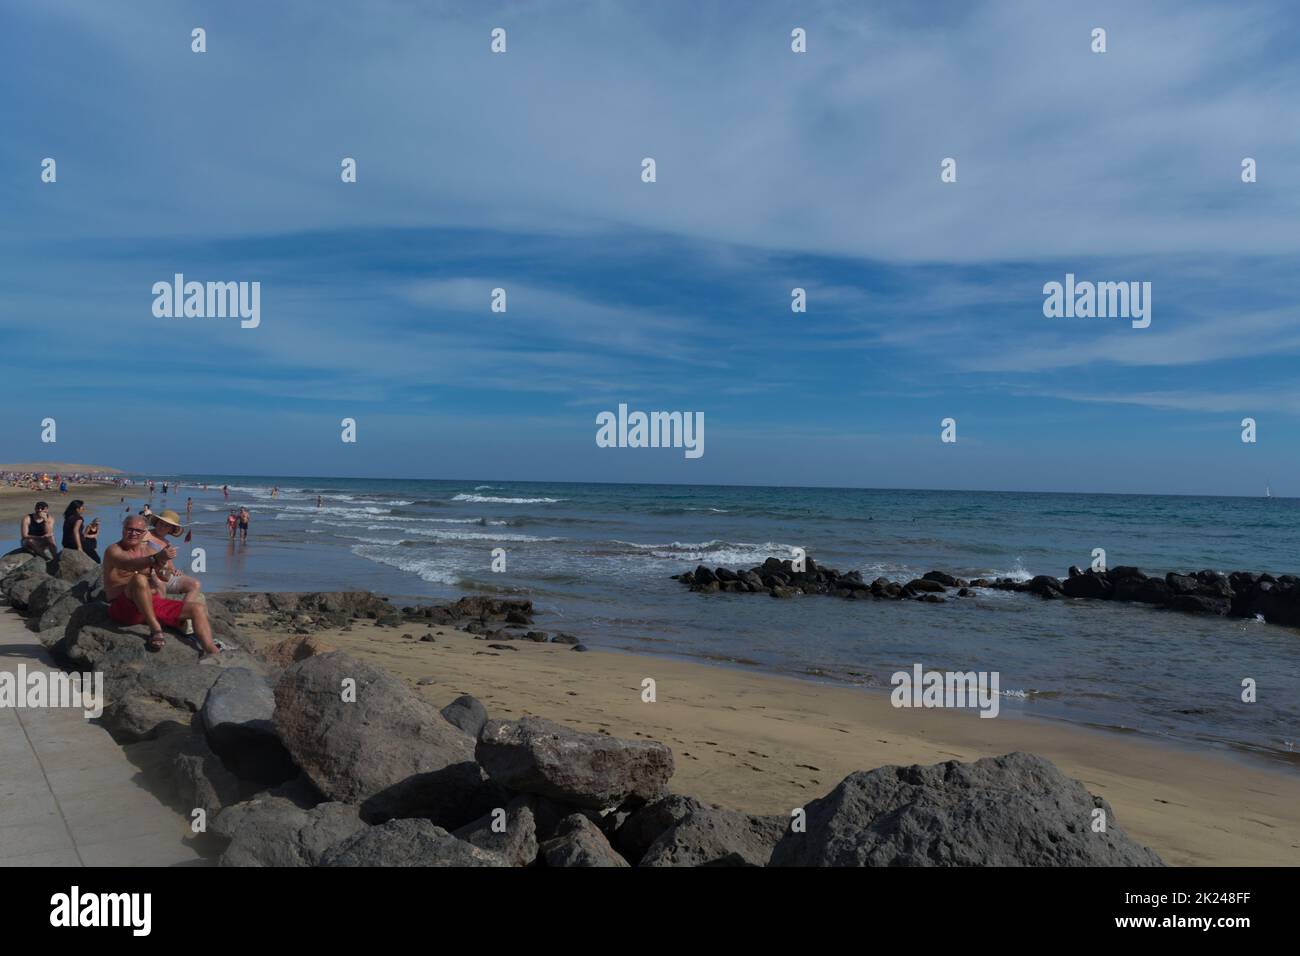 CRAN CANARIA, MELONERAS - 13 NOVEMBRE 2019: Le persone godono della vista sul mare e si siedono al sole sul lungomare di Meloneras a Gran Canaria, Spagna Foto Stock